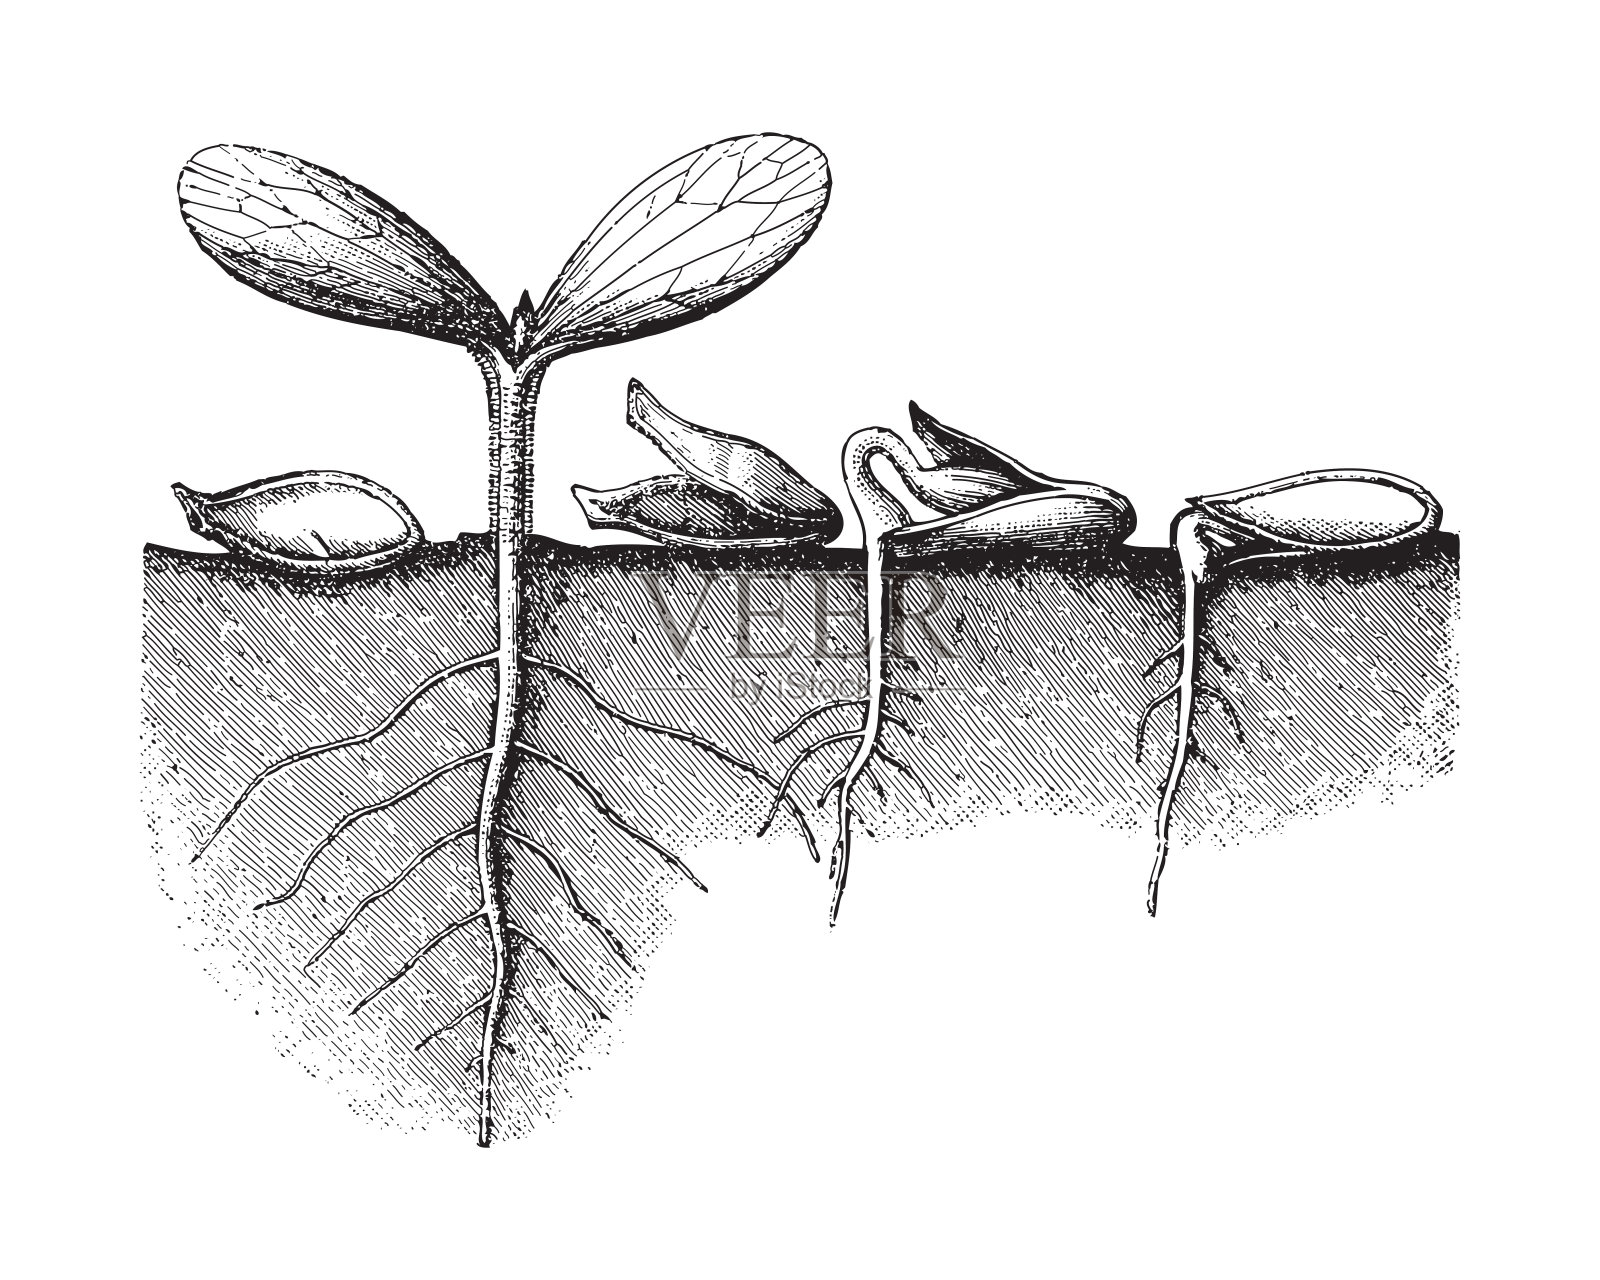 发芽种子花生物体自然季节植物生长阶段草图植物形态树豆豆芽绘画插图